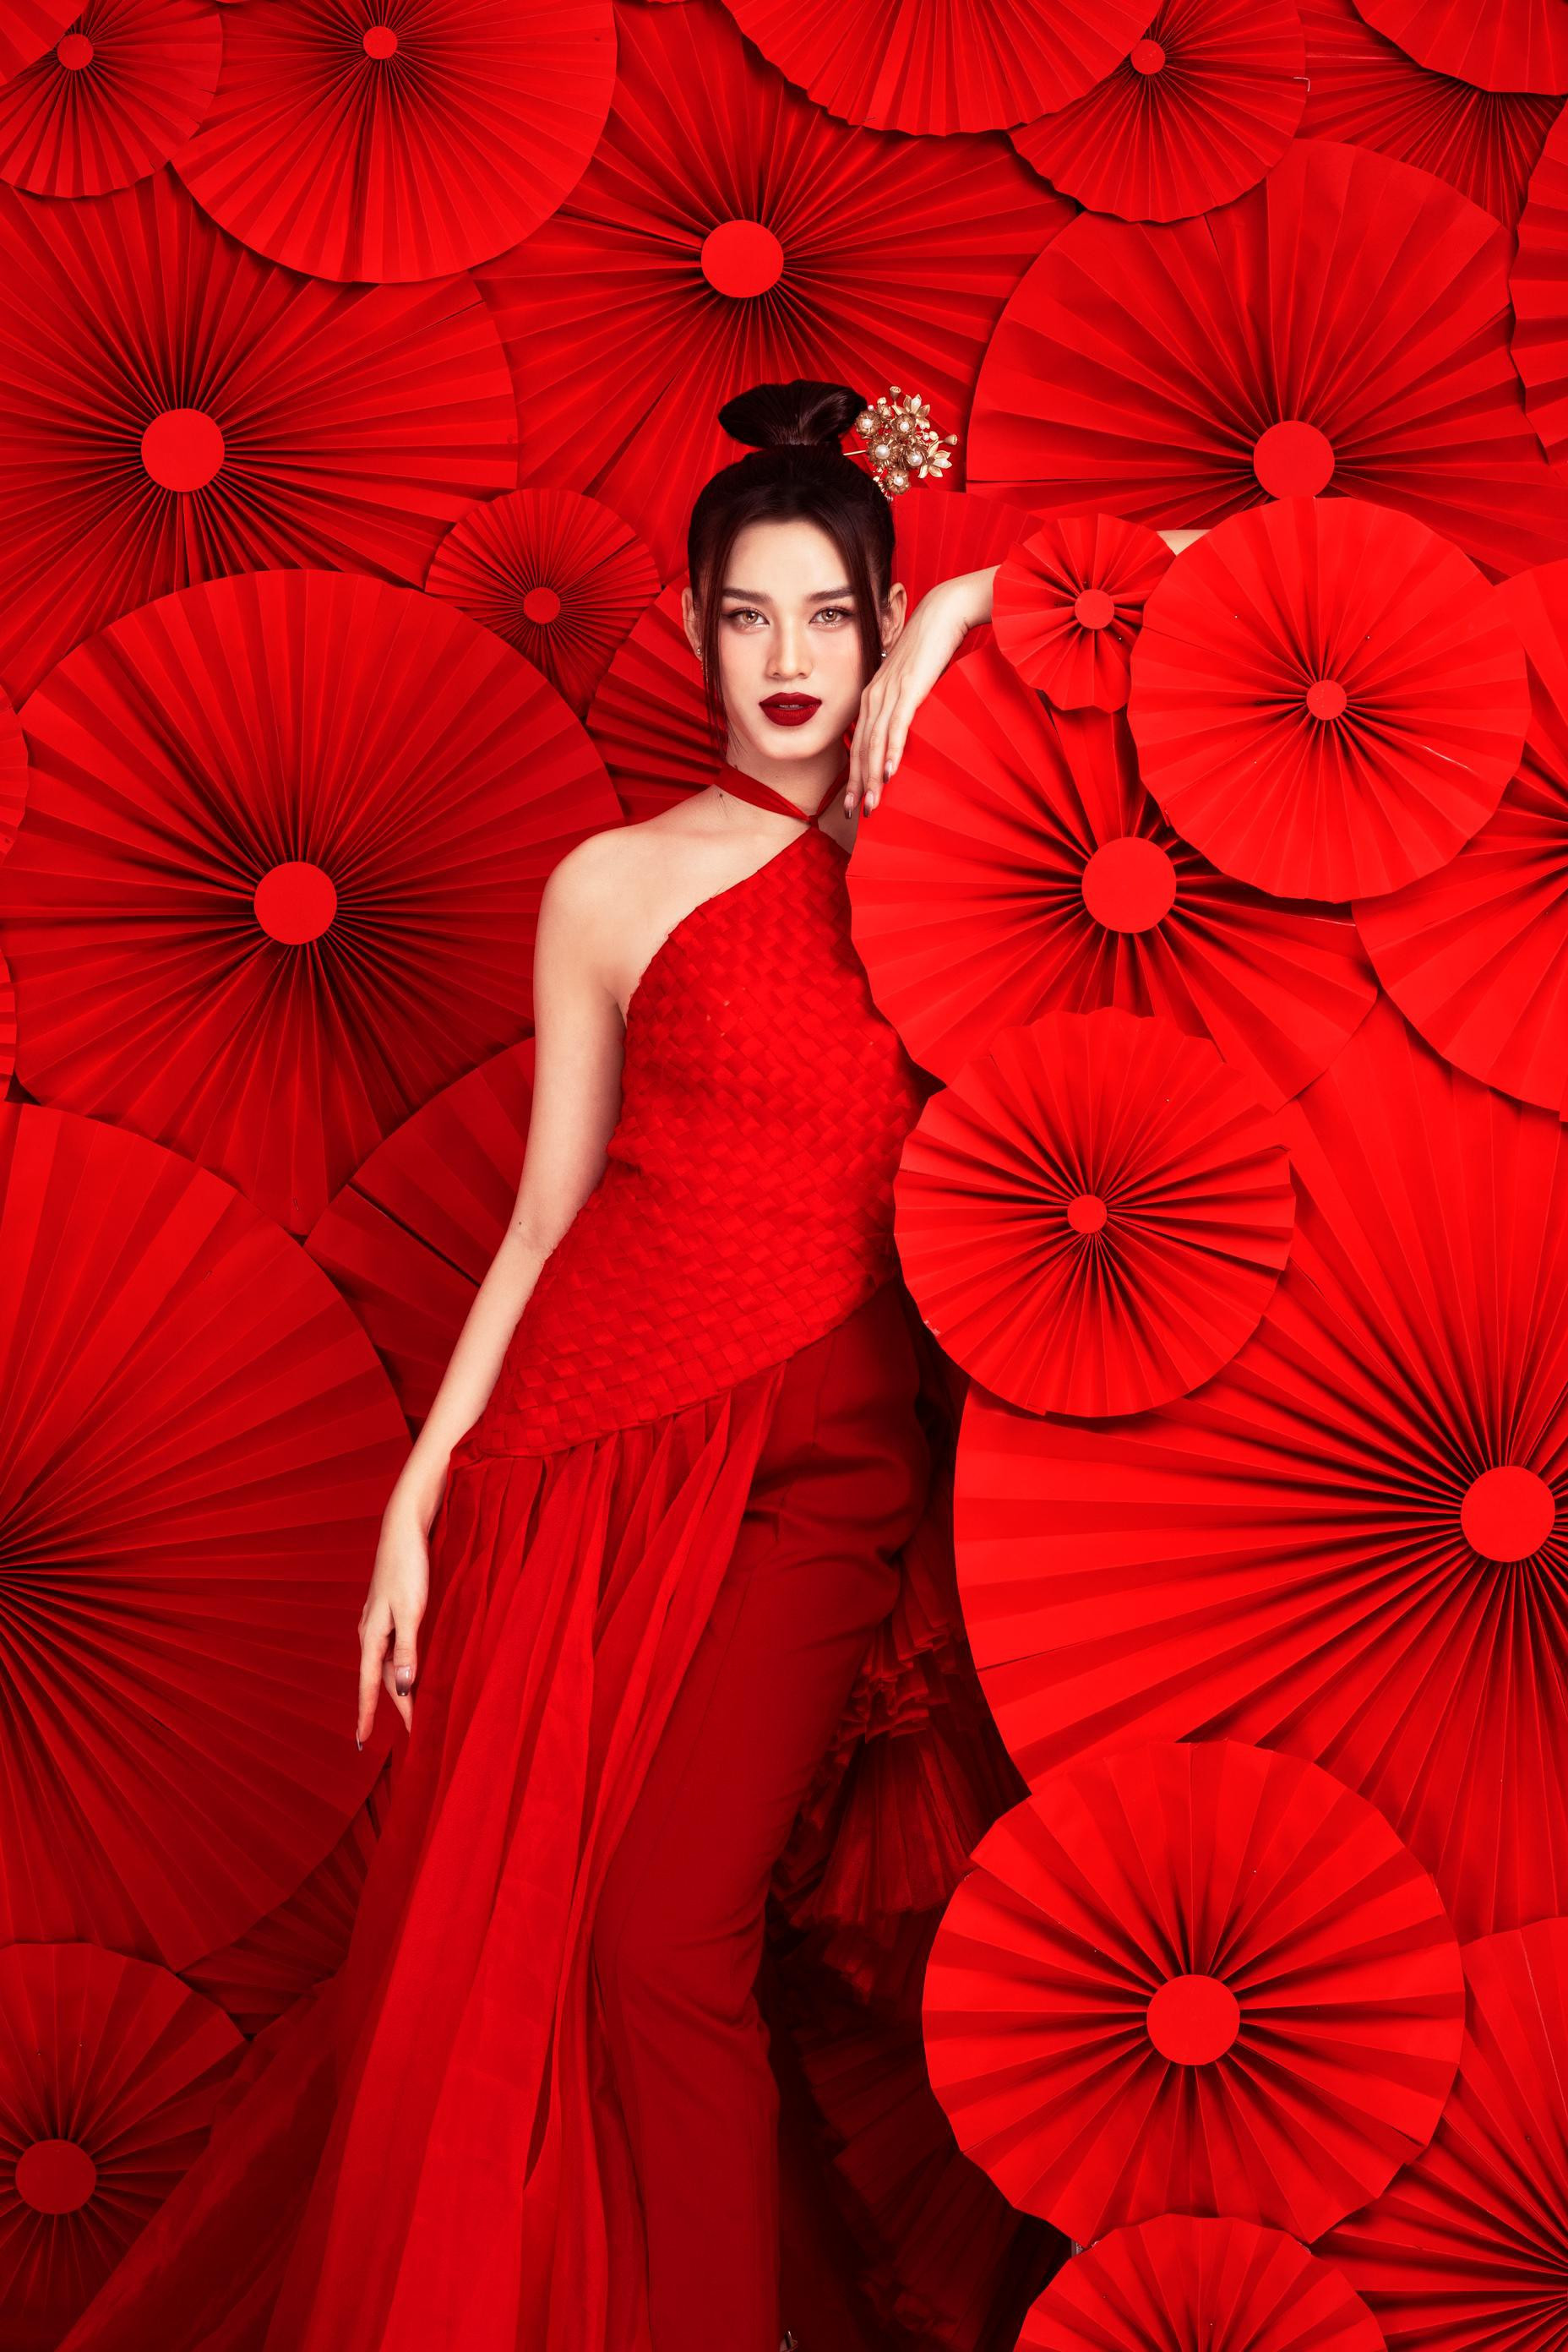 Hoa hậu Đỗ Thị Hà diện yếm đỏ, khoe lưng trần gợi cảm trong bộ ảnh Tết ảnh 1